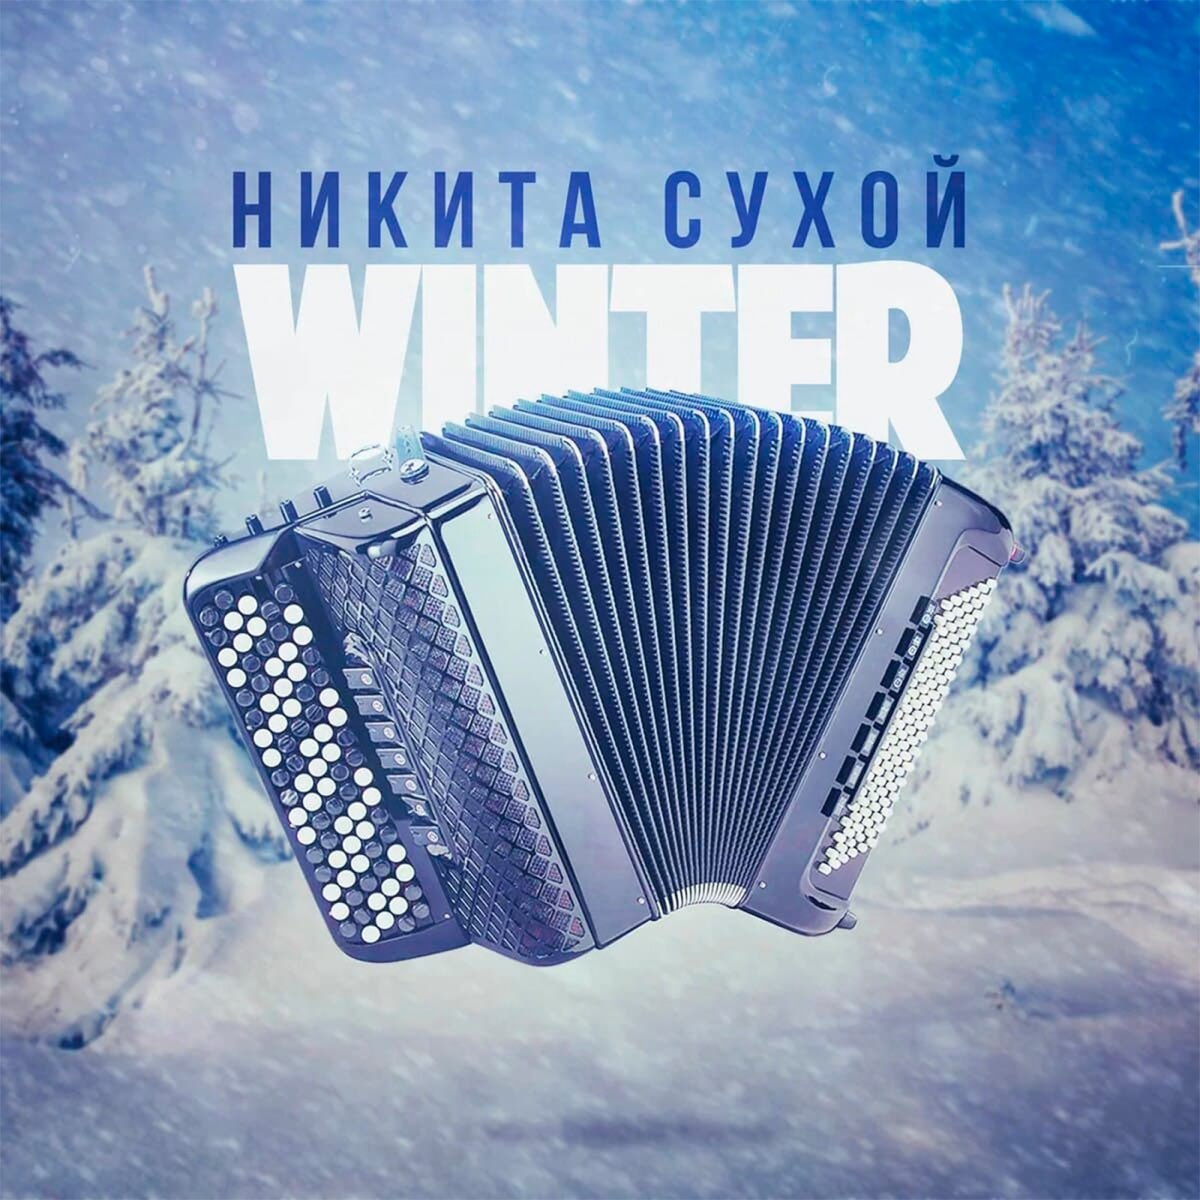 Сухой сухой песня английская. Музыкальный альбом зима.